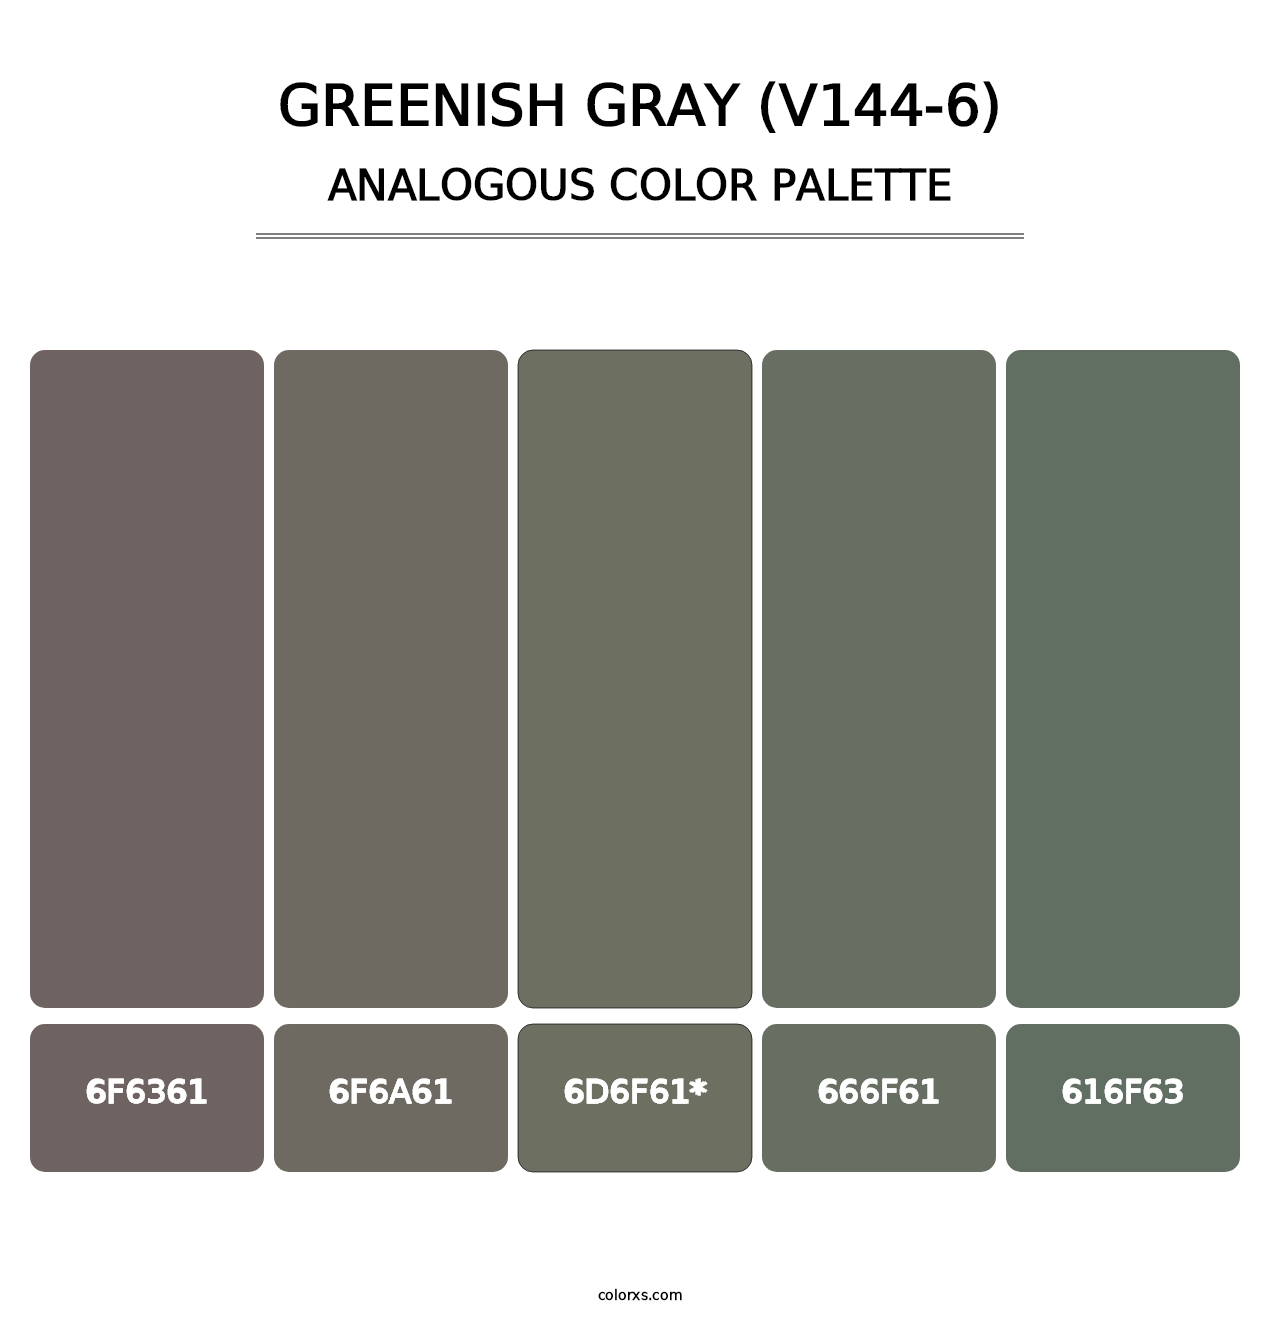 Greenish Gray (V144-6) - Analogous Color Palette